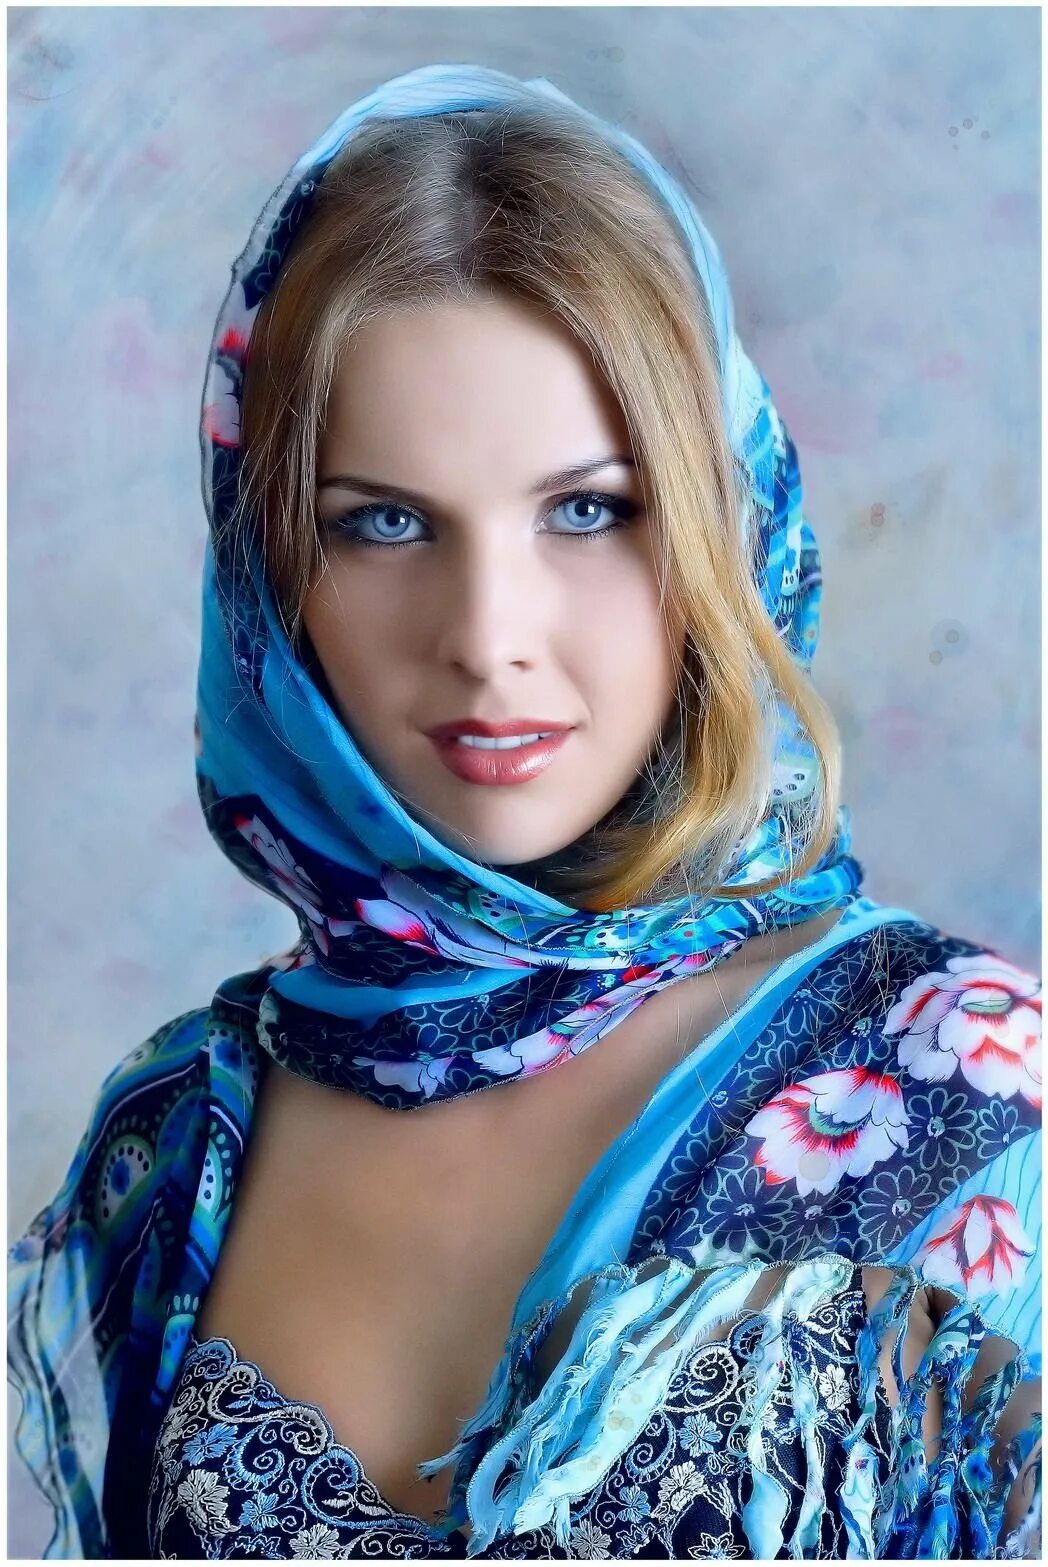 Пышная русская красавица. Девушка в платке. Красавица в платке. Девушка в голубом платке. Красивая девушка в платке.